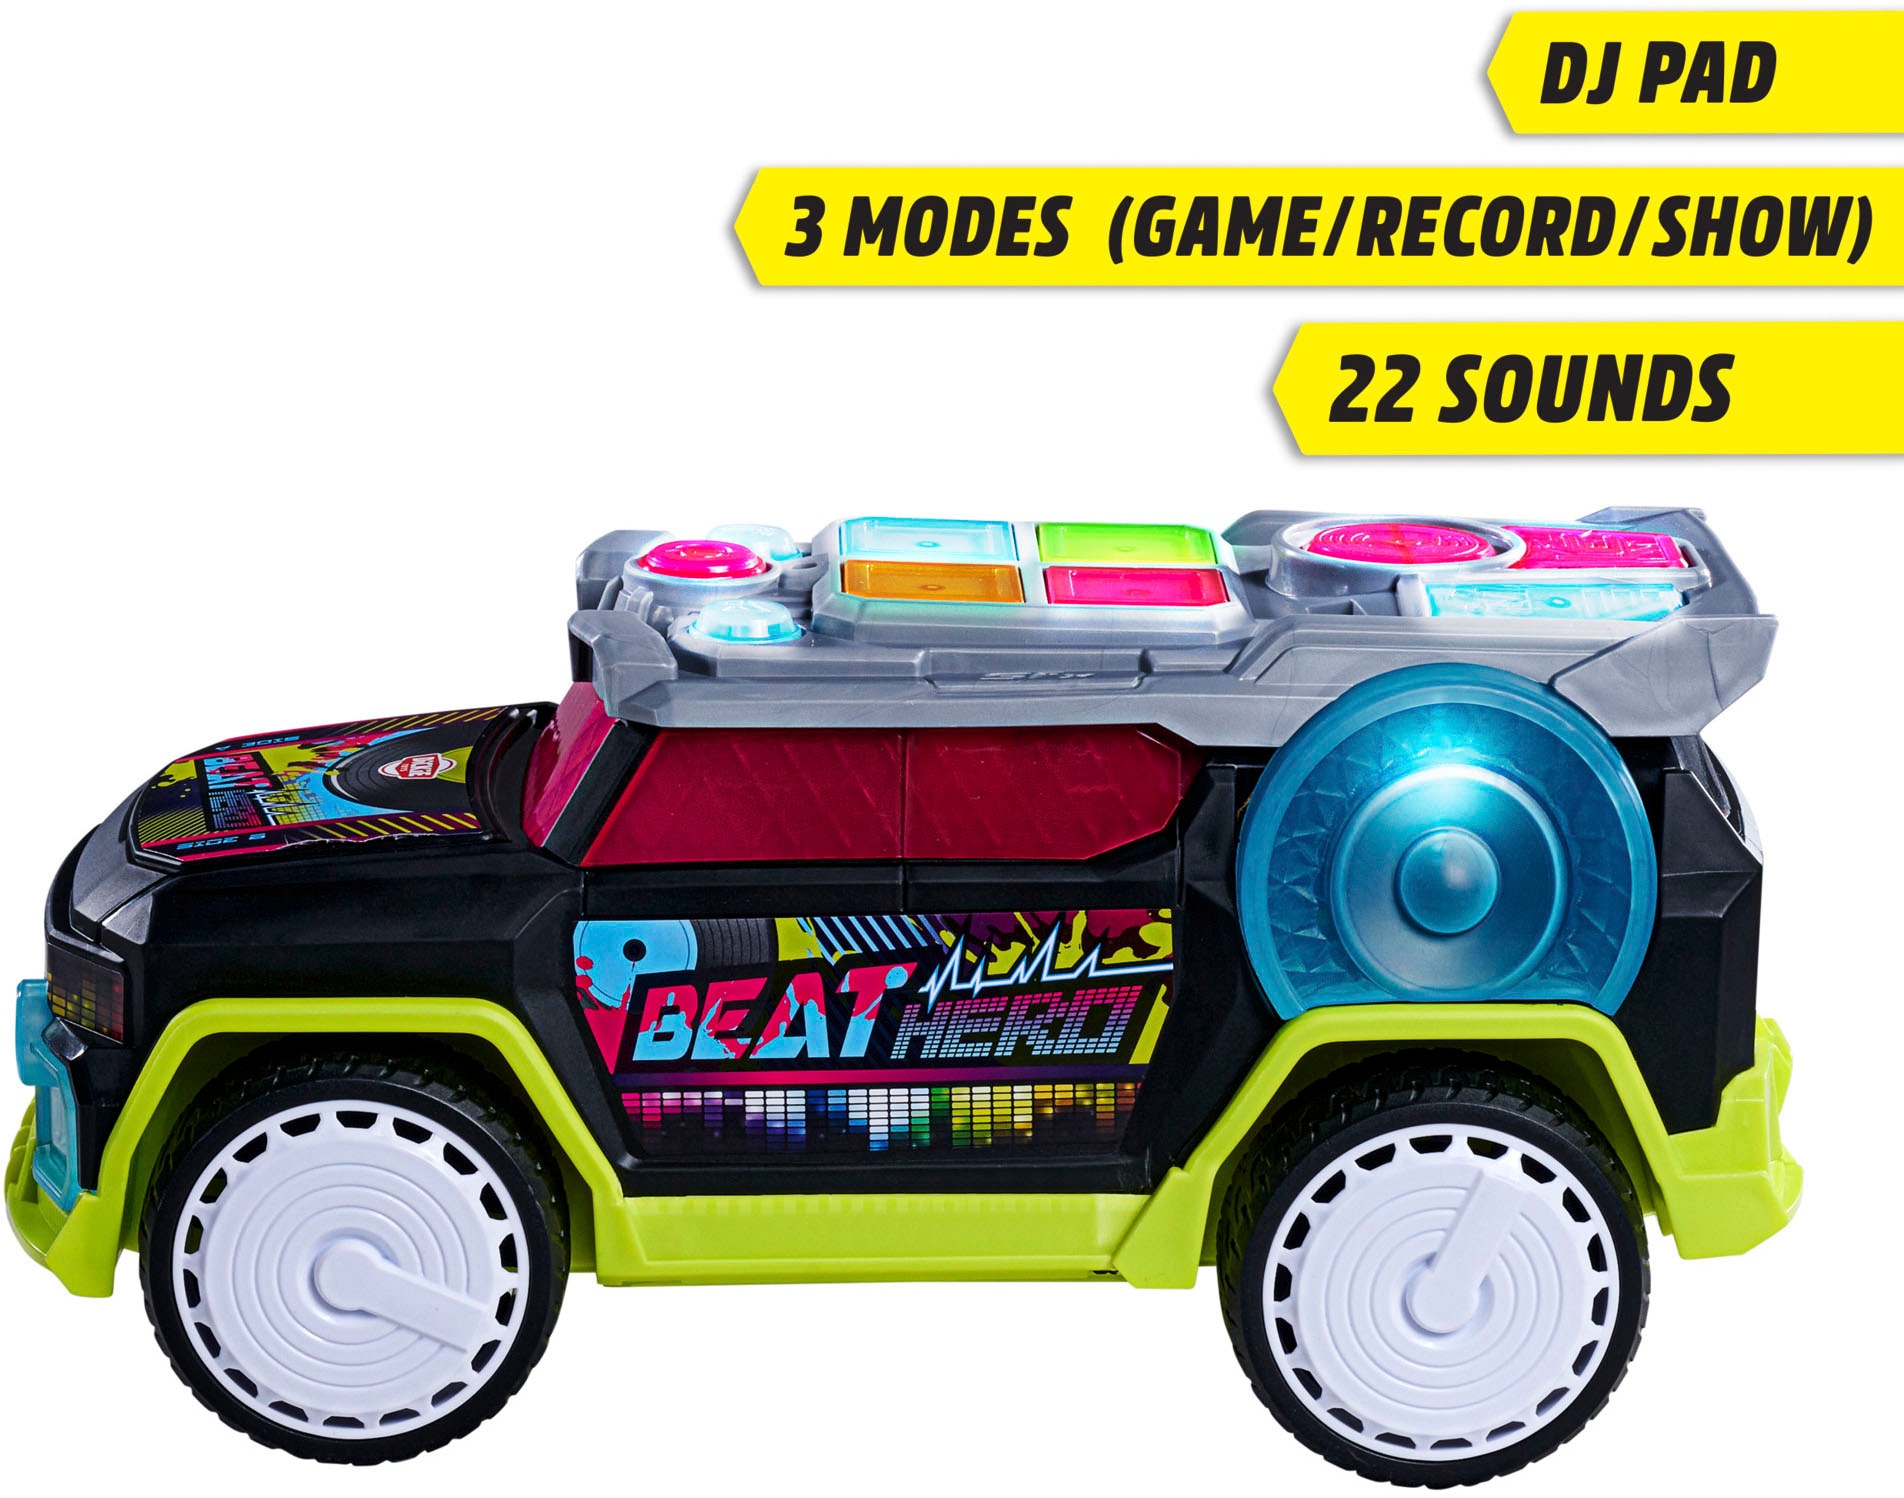 Dickie Toys Spielzeug-Auto »STREETS N BEATZ, Beat Hero«, mit Licht & Sound